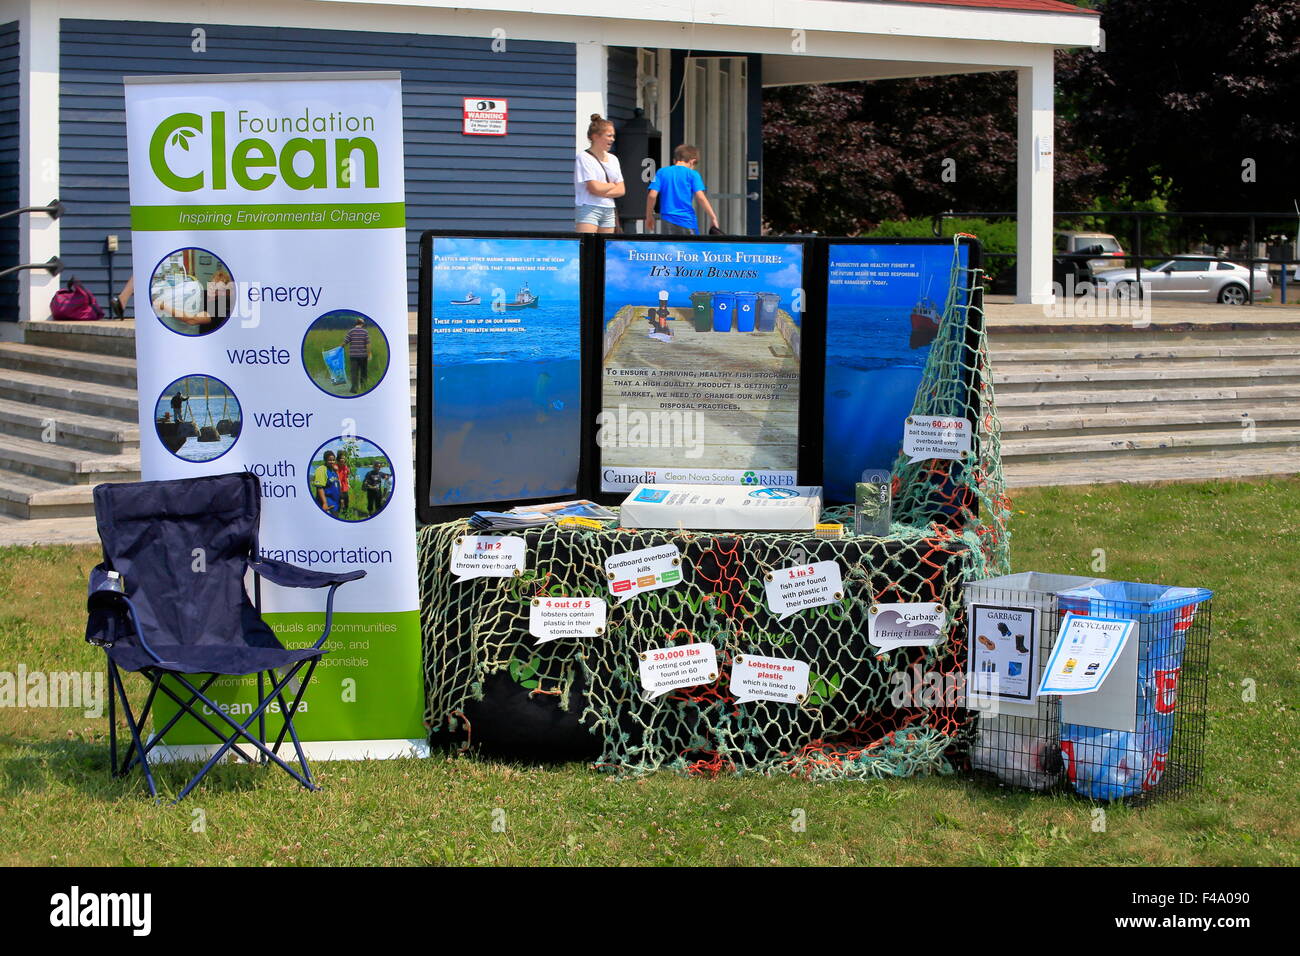 Nettoyer une pièce ou de l'environnement Fondation affiche faisant la promotion de la conservation de l'énergie, le recyclage, l'eau potable, l'éducation, la gestion des déchets, etc. Banque D'Images